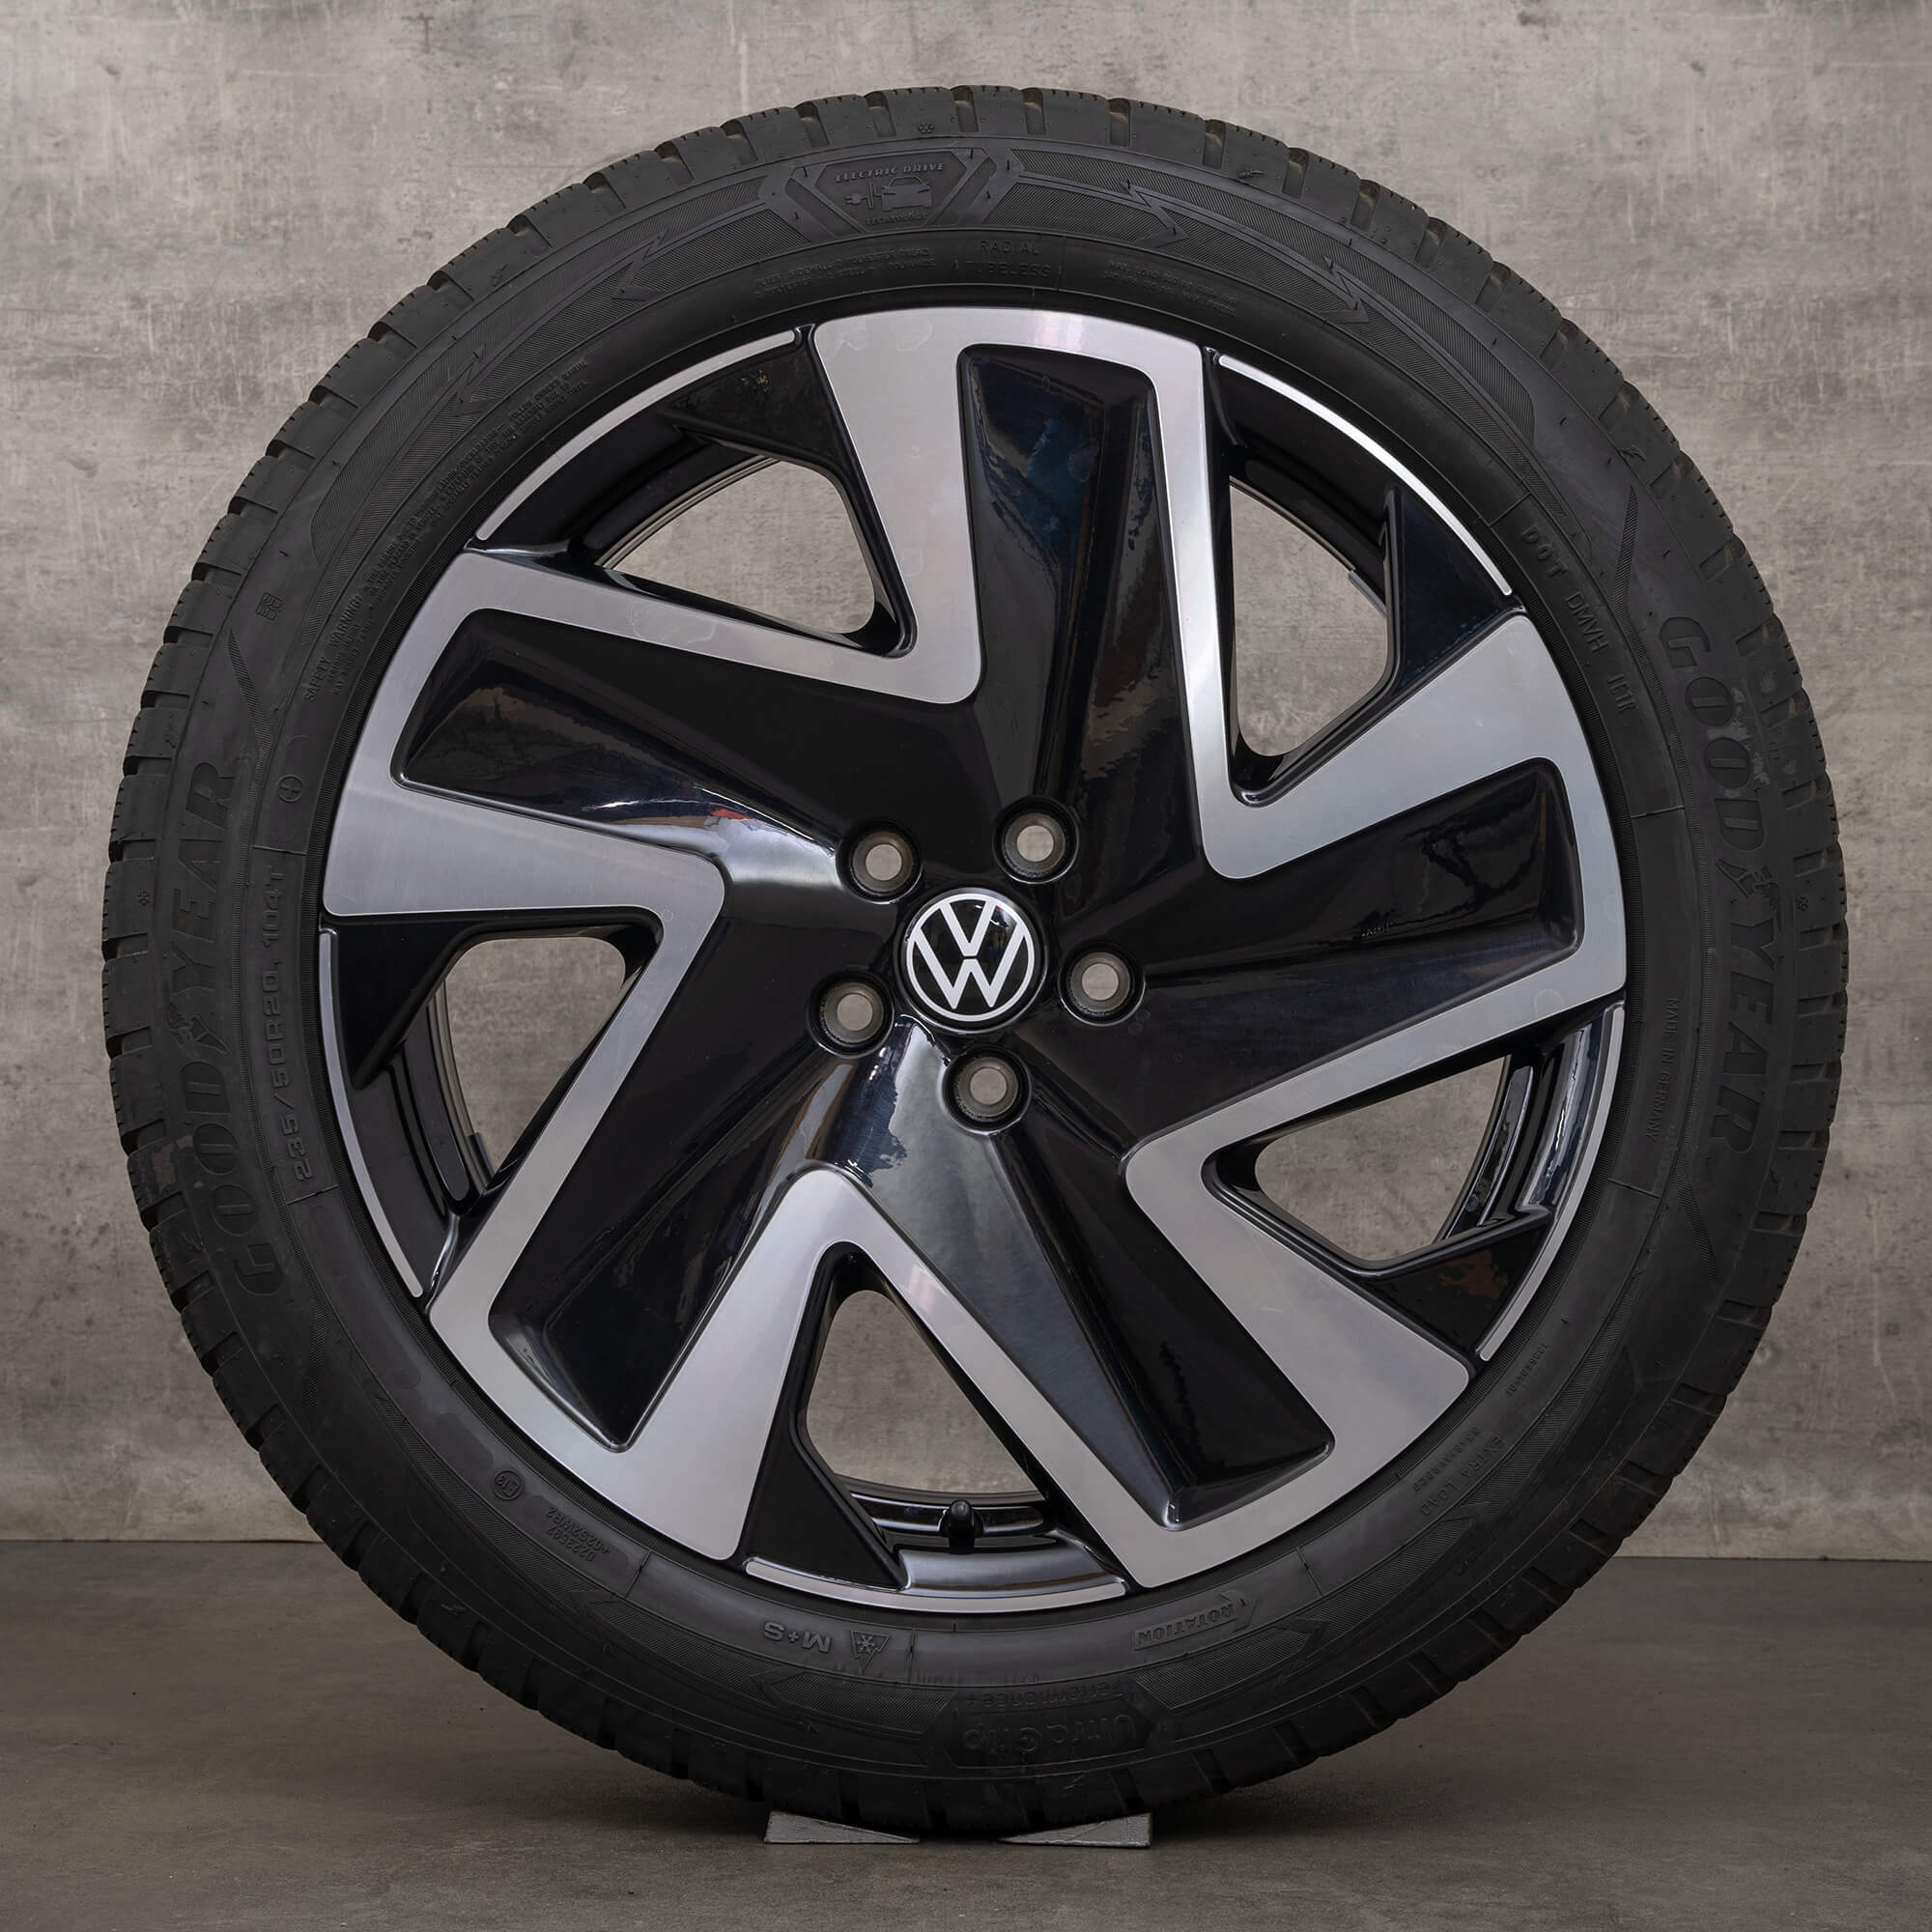 ID VW. Ruote invernali Buzz Pro Cerchi da 20 pollici Pneumatici in alluminio